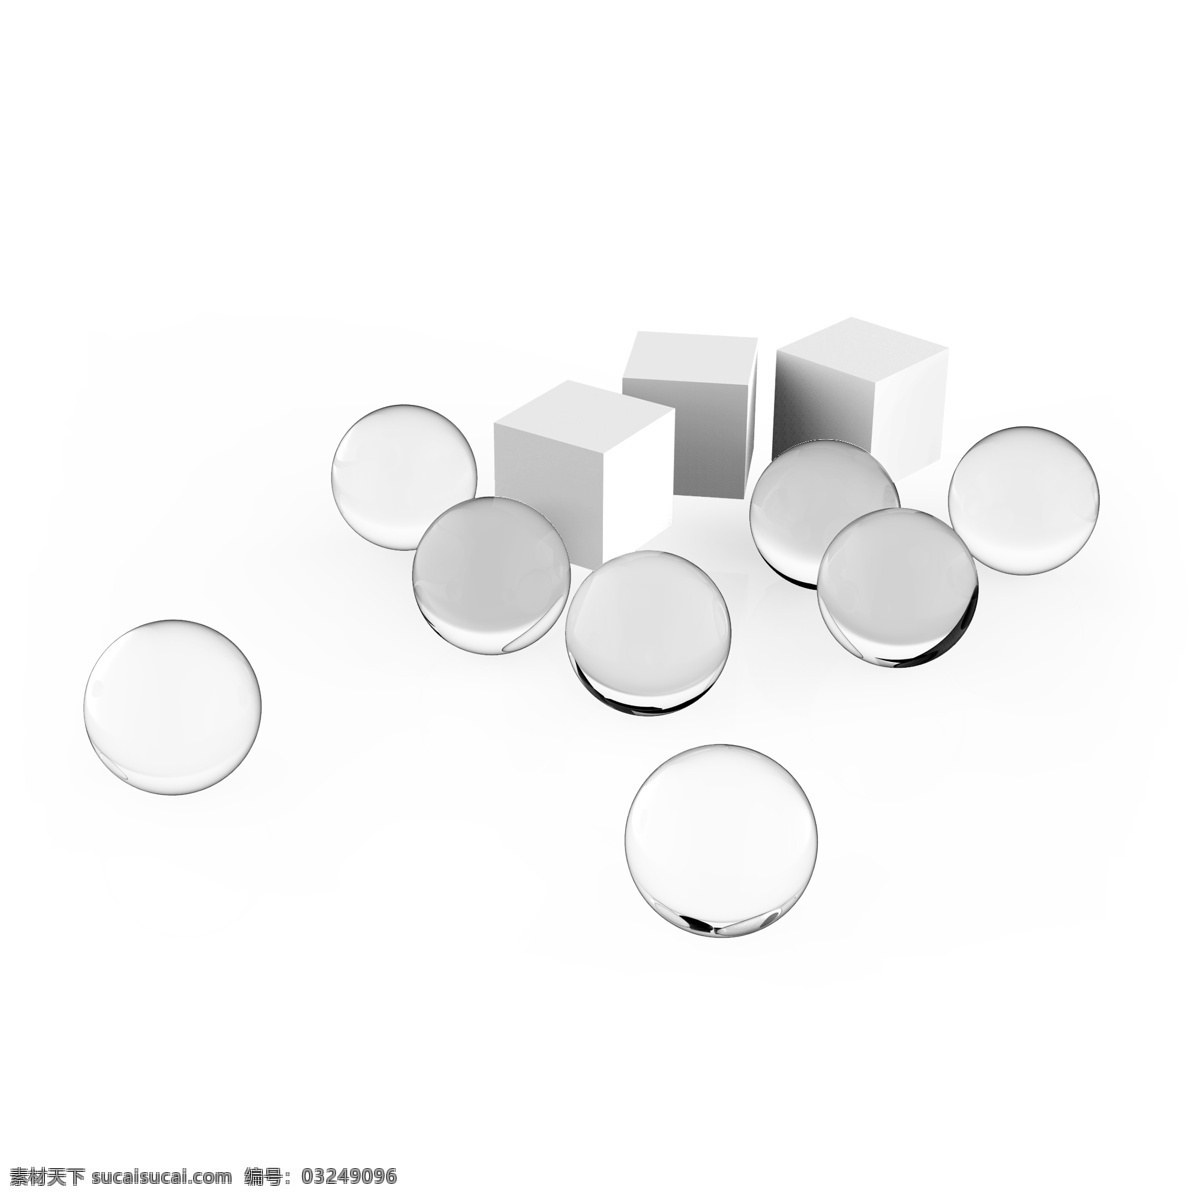 创意 立体 玻璃球 正方体 空间 材质 圆形 方体 空间组合